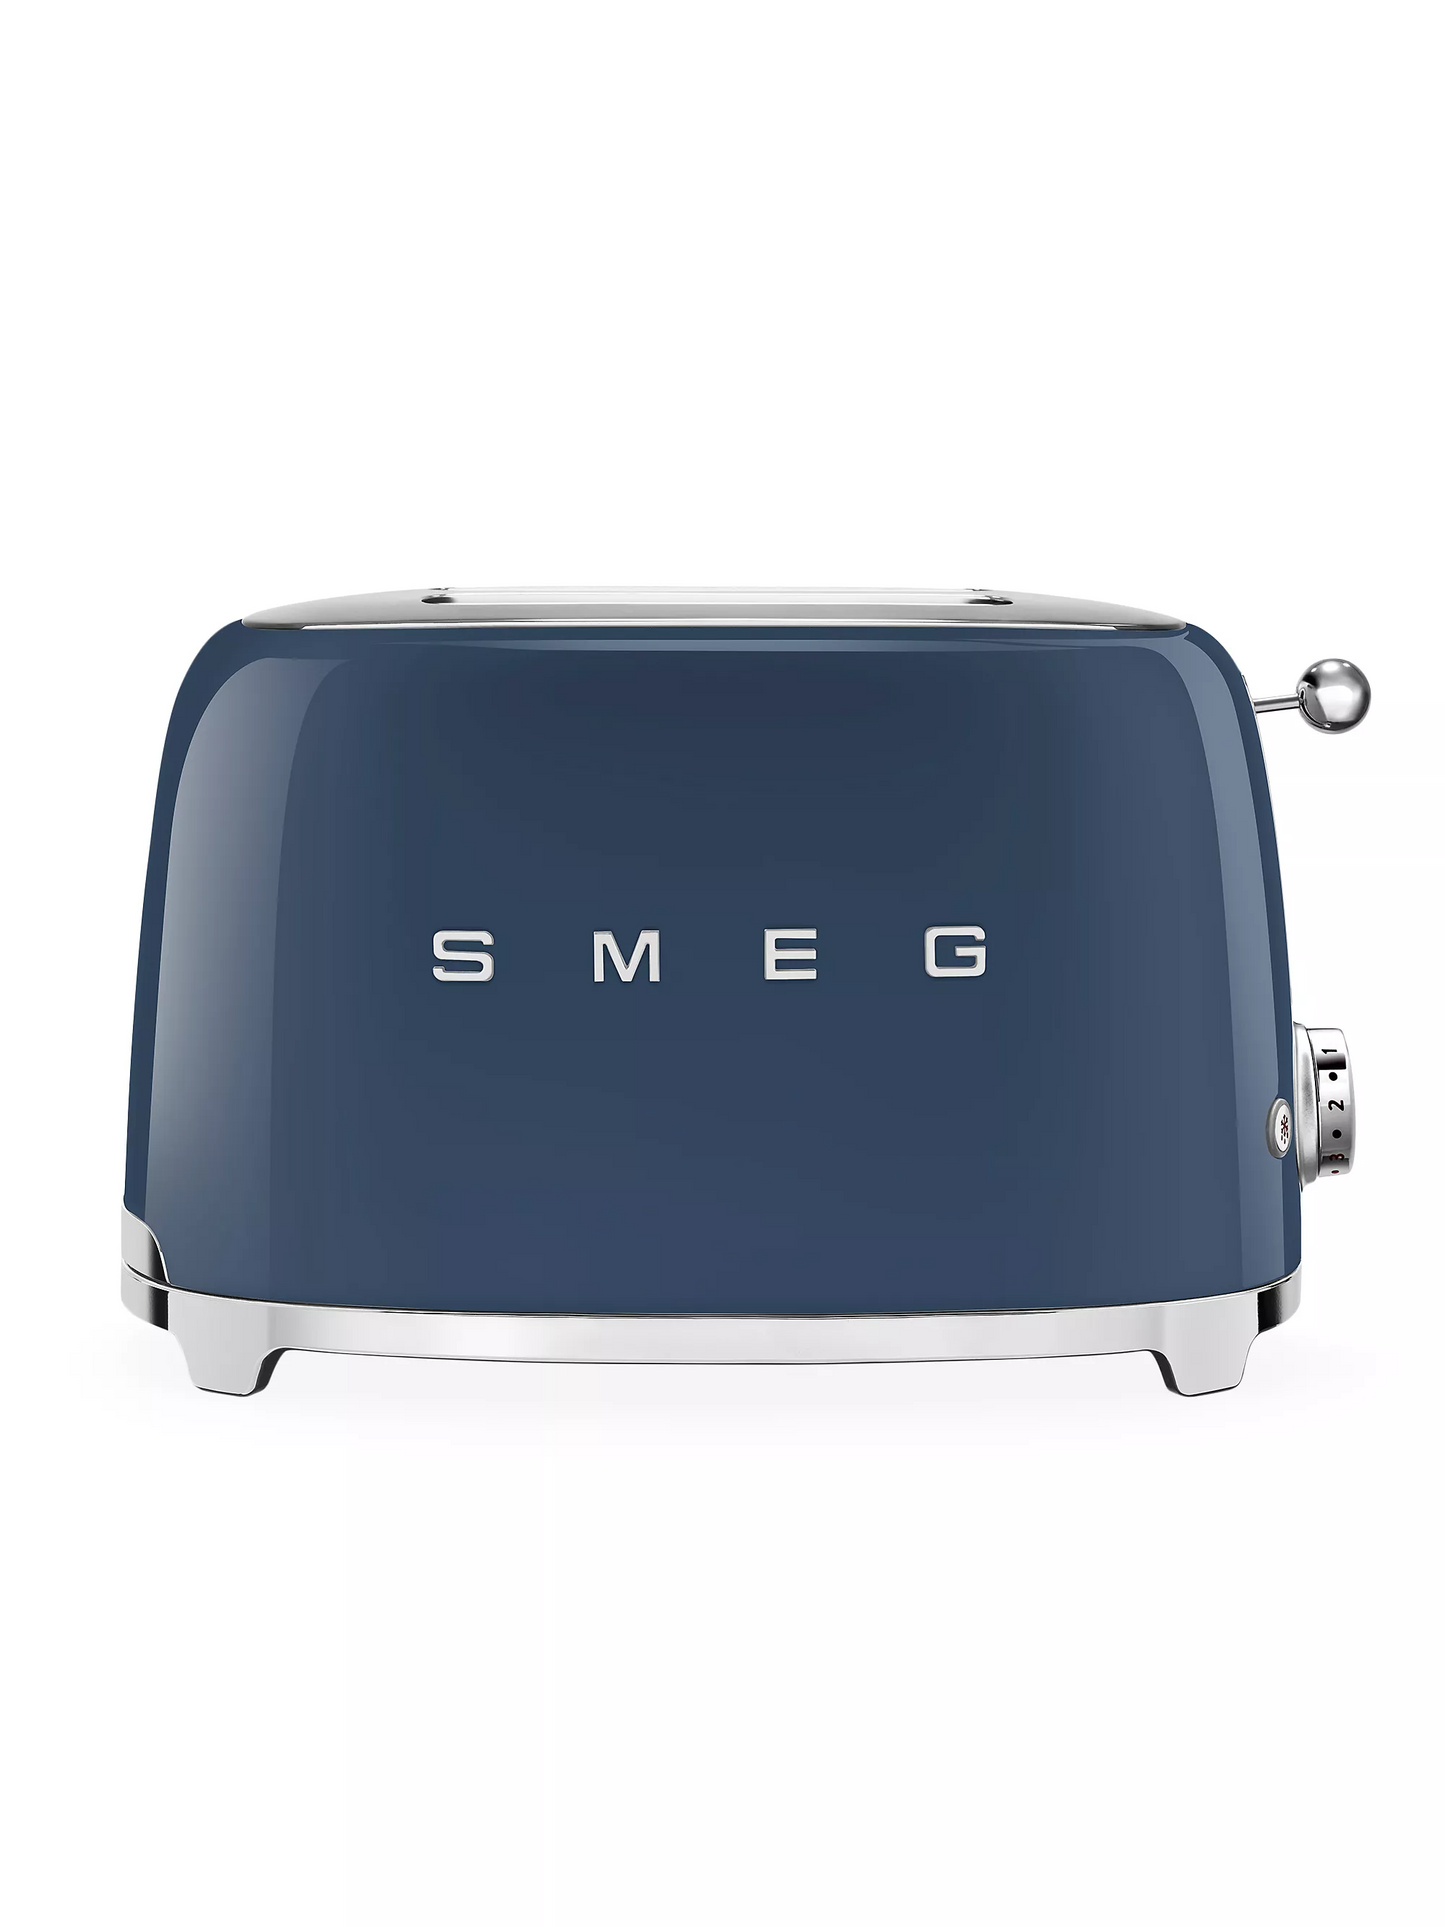 SMEG Retro-Style 2 Slice Toaster